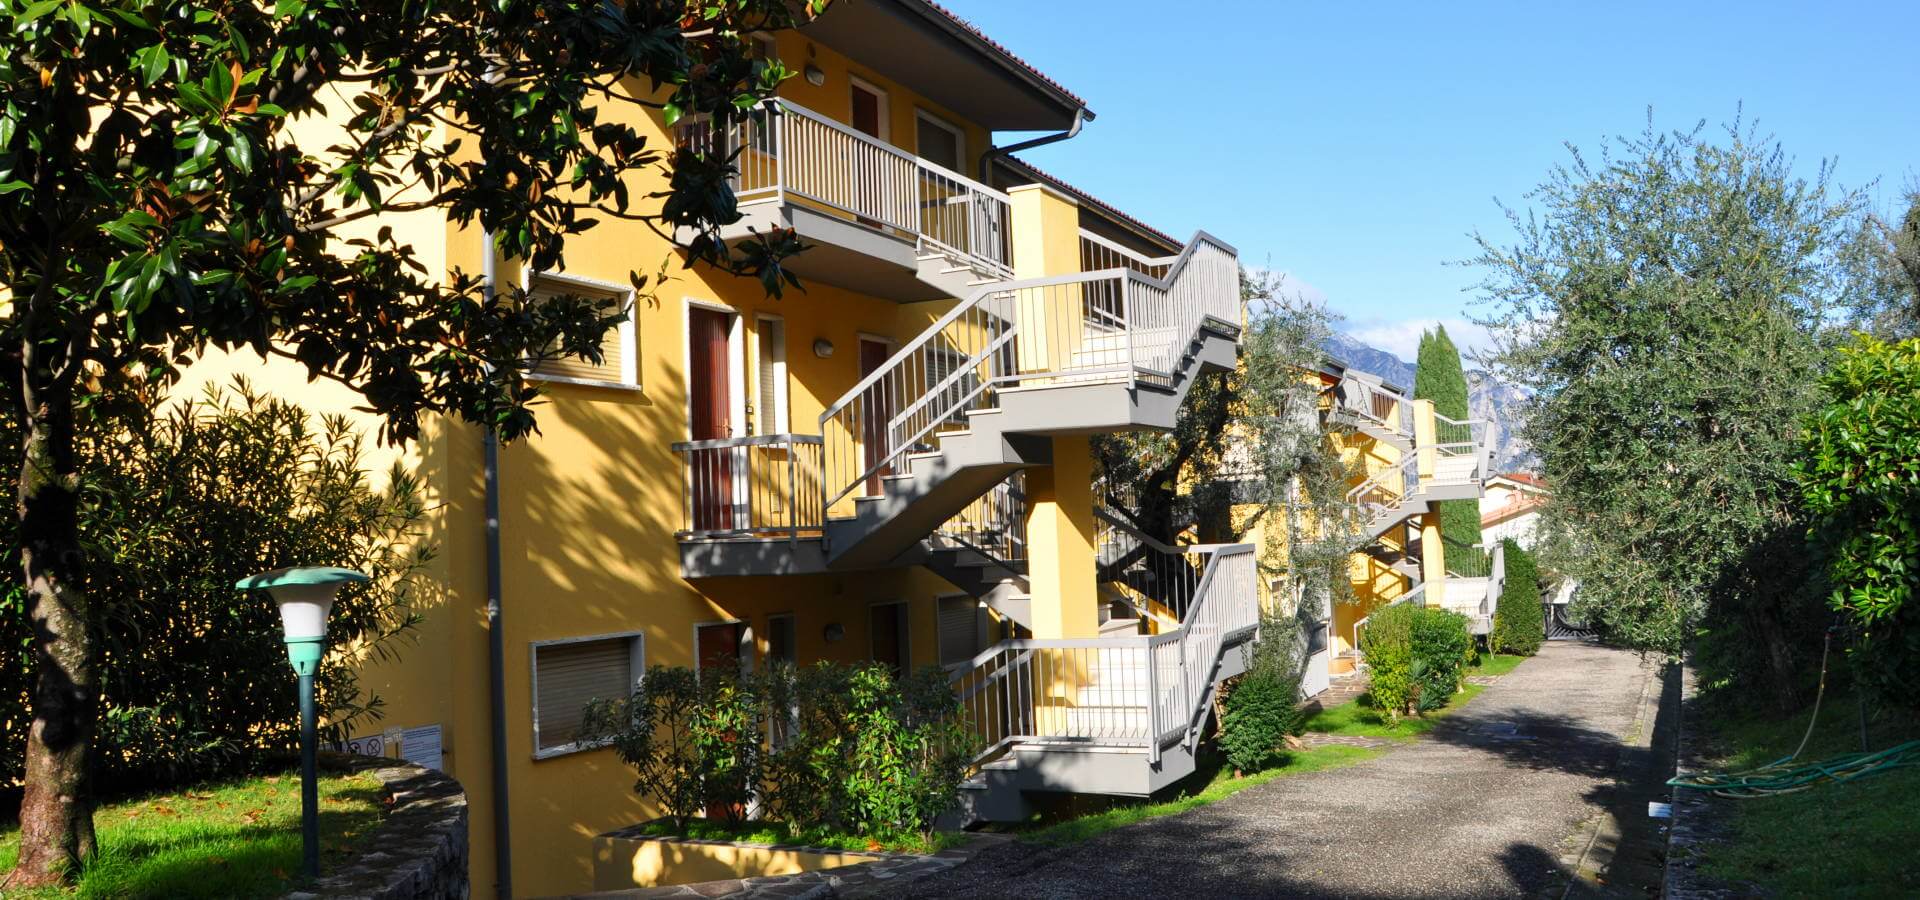 Foto di Appartamenti Andreis a Malcesine con balcone vista lago, uso giardino e piscina